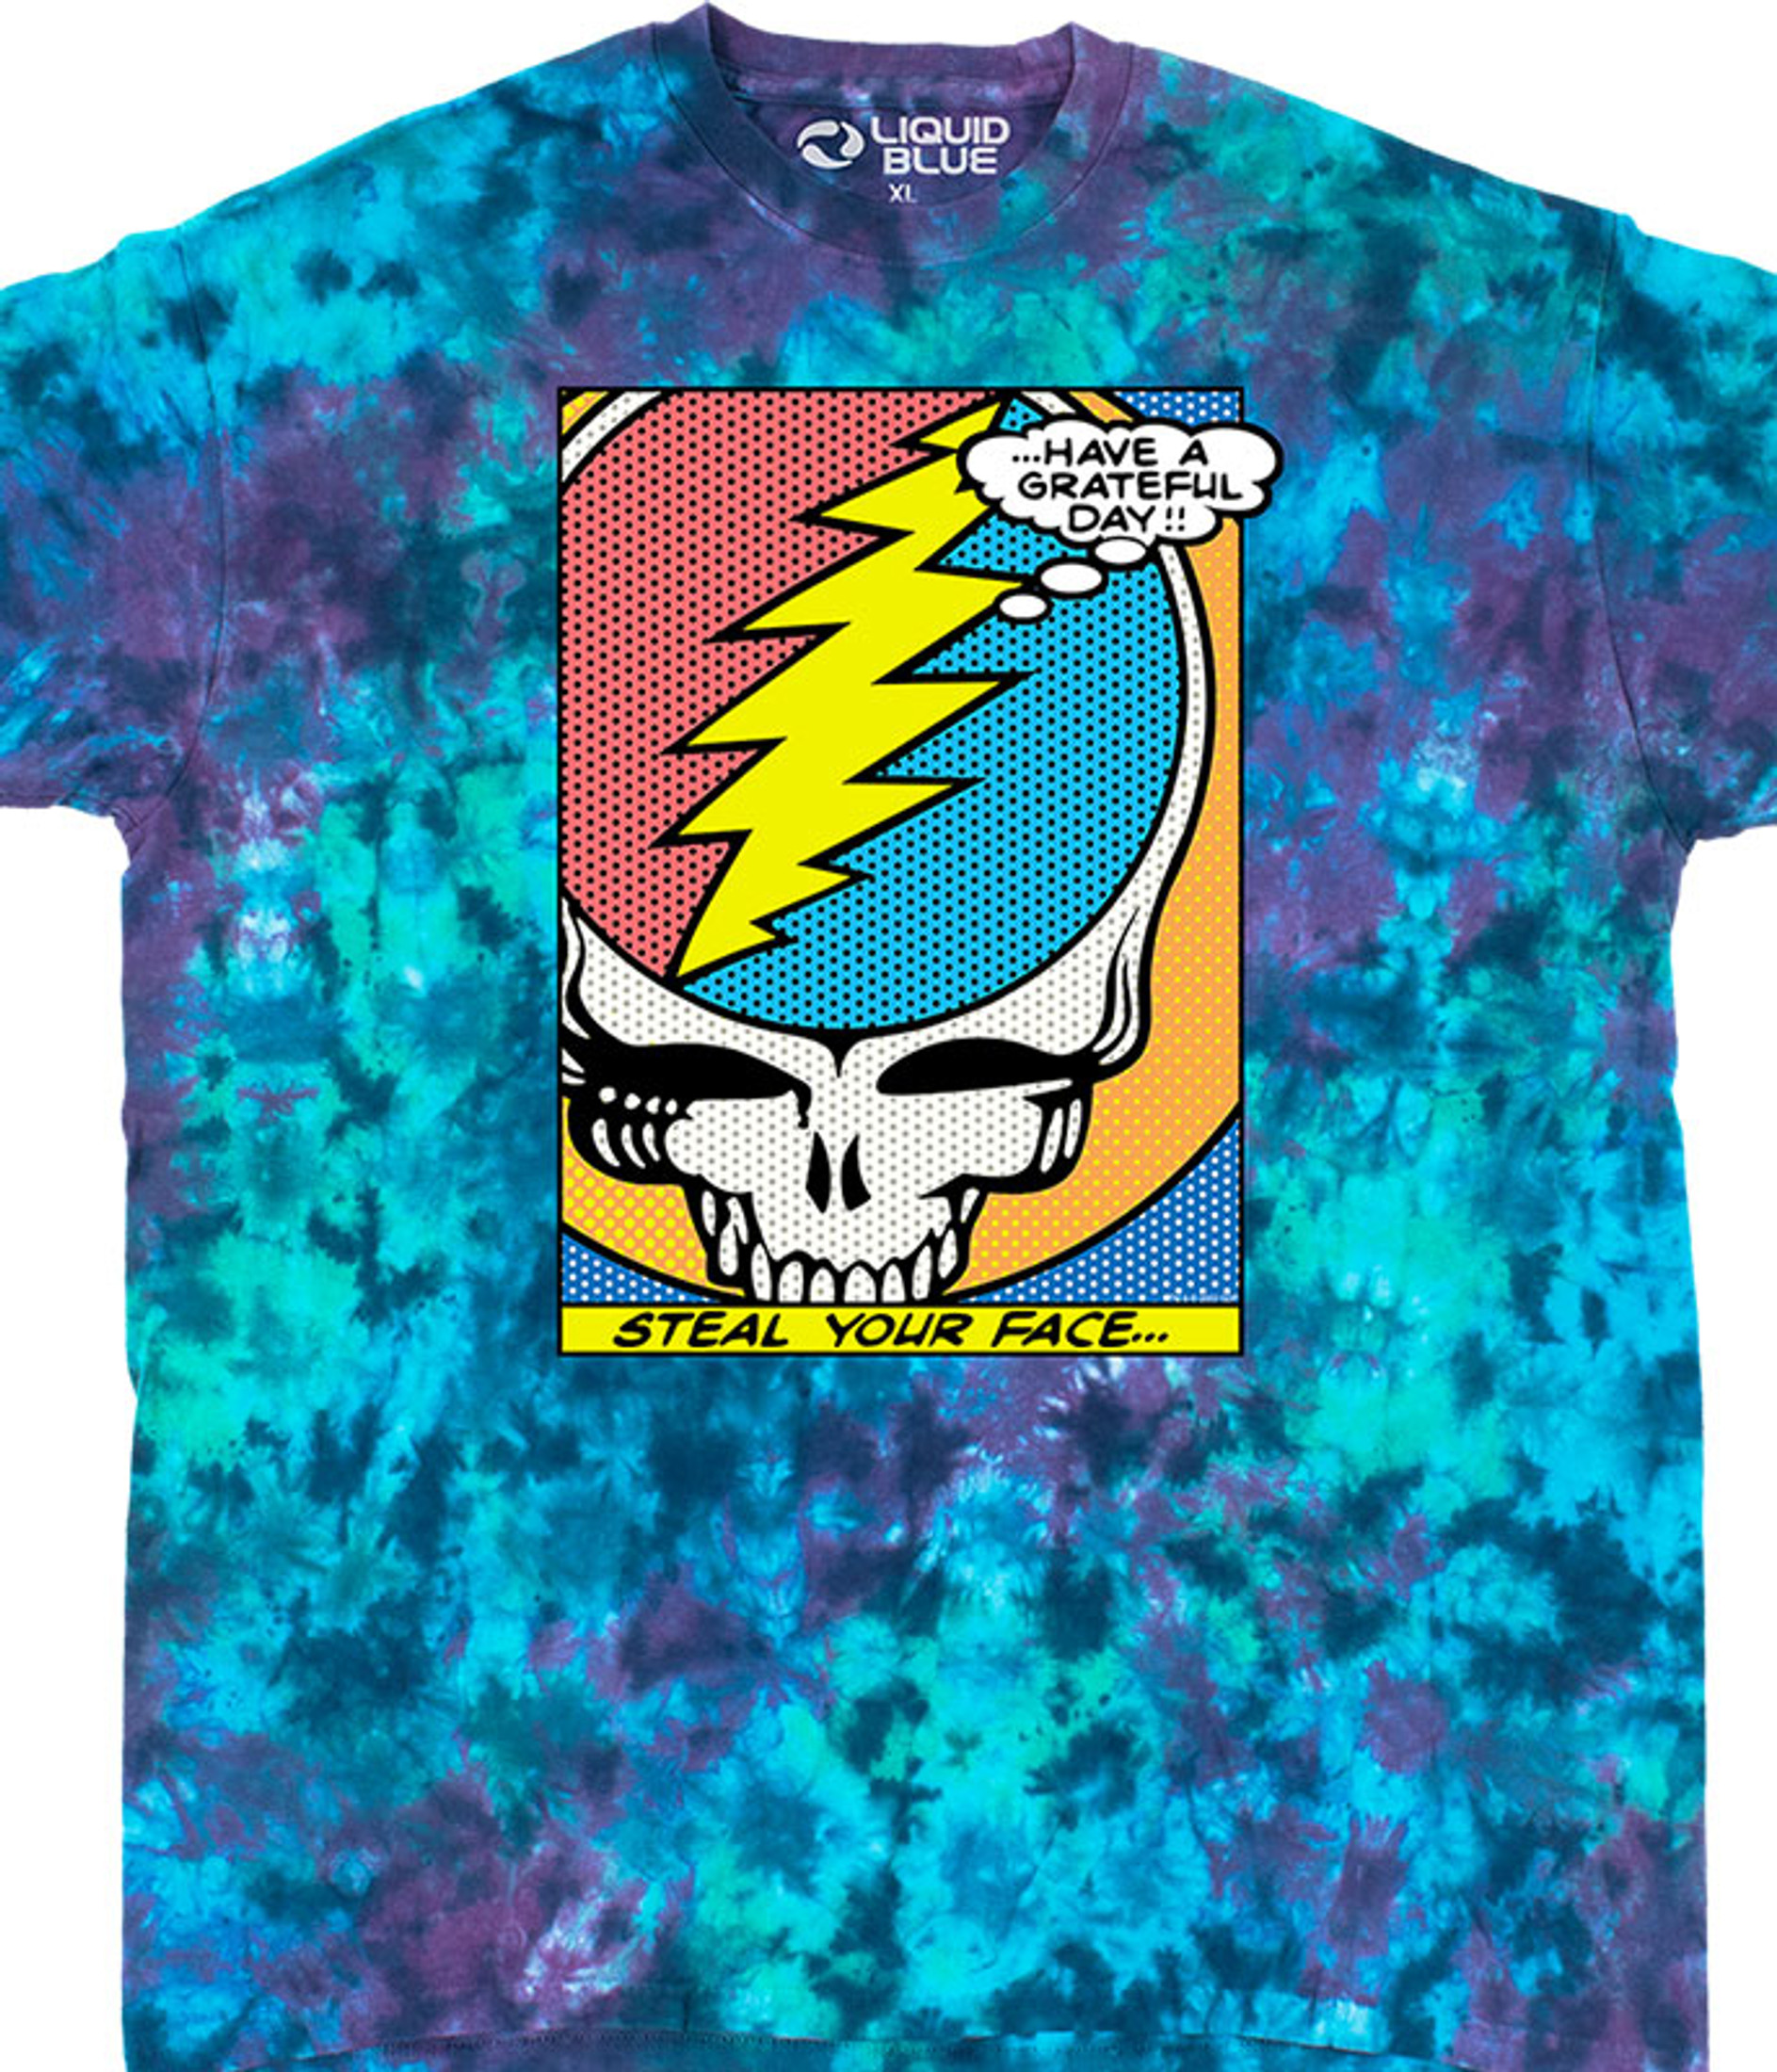 Grateful Dead Men's Space Your Face Tie Dye T-Shirt Multi